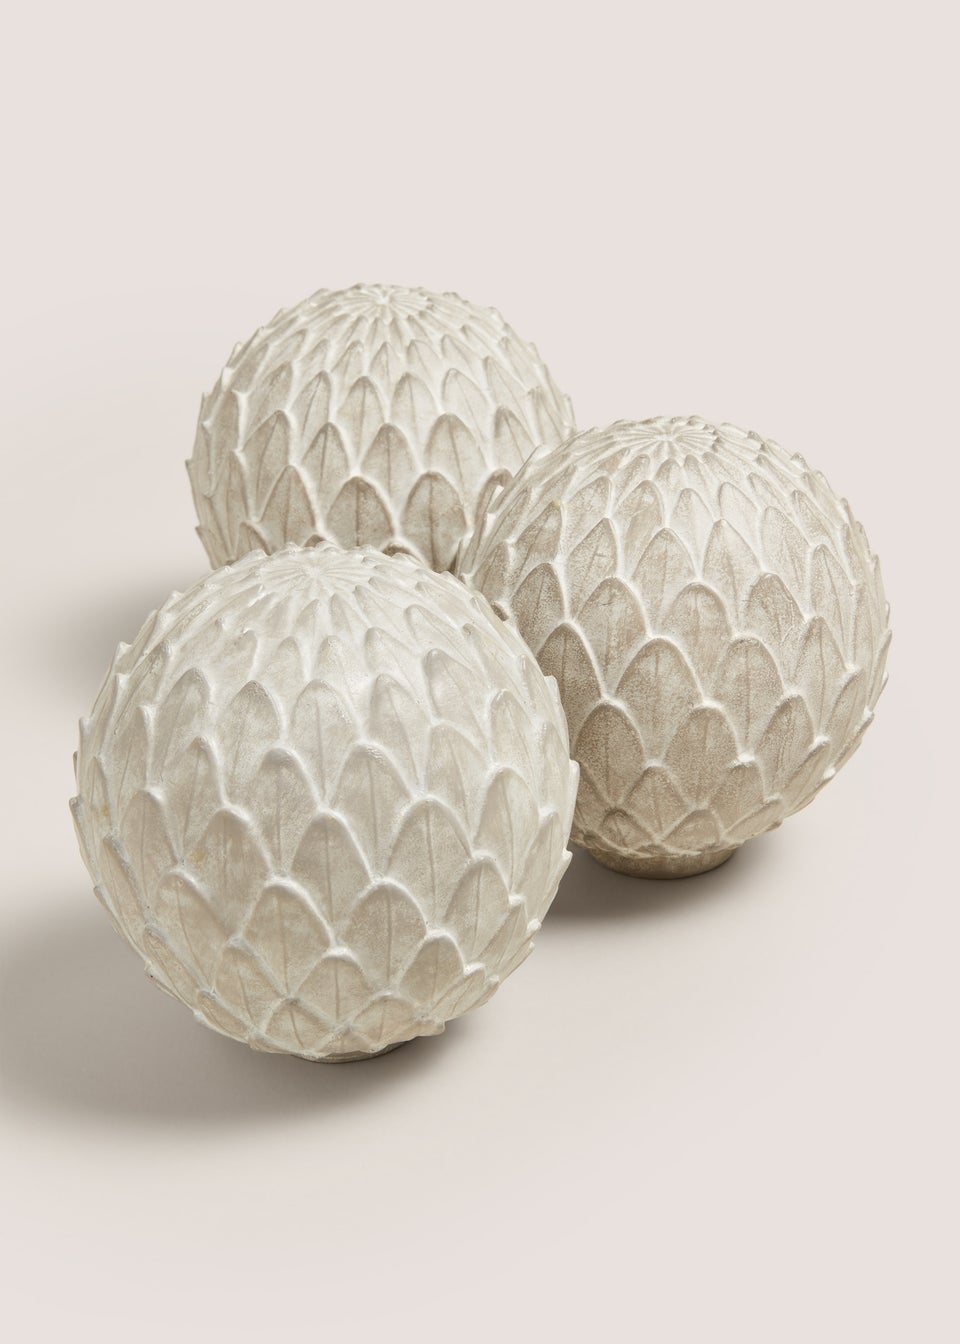 3 Pack Concrete Artichoke Balls (15.5cm x 15.5cm x 15.5cm)